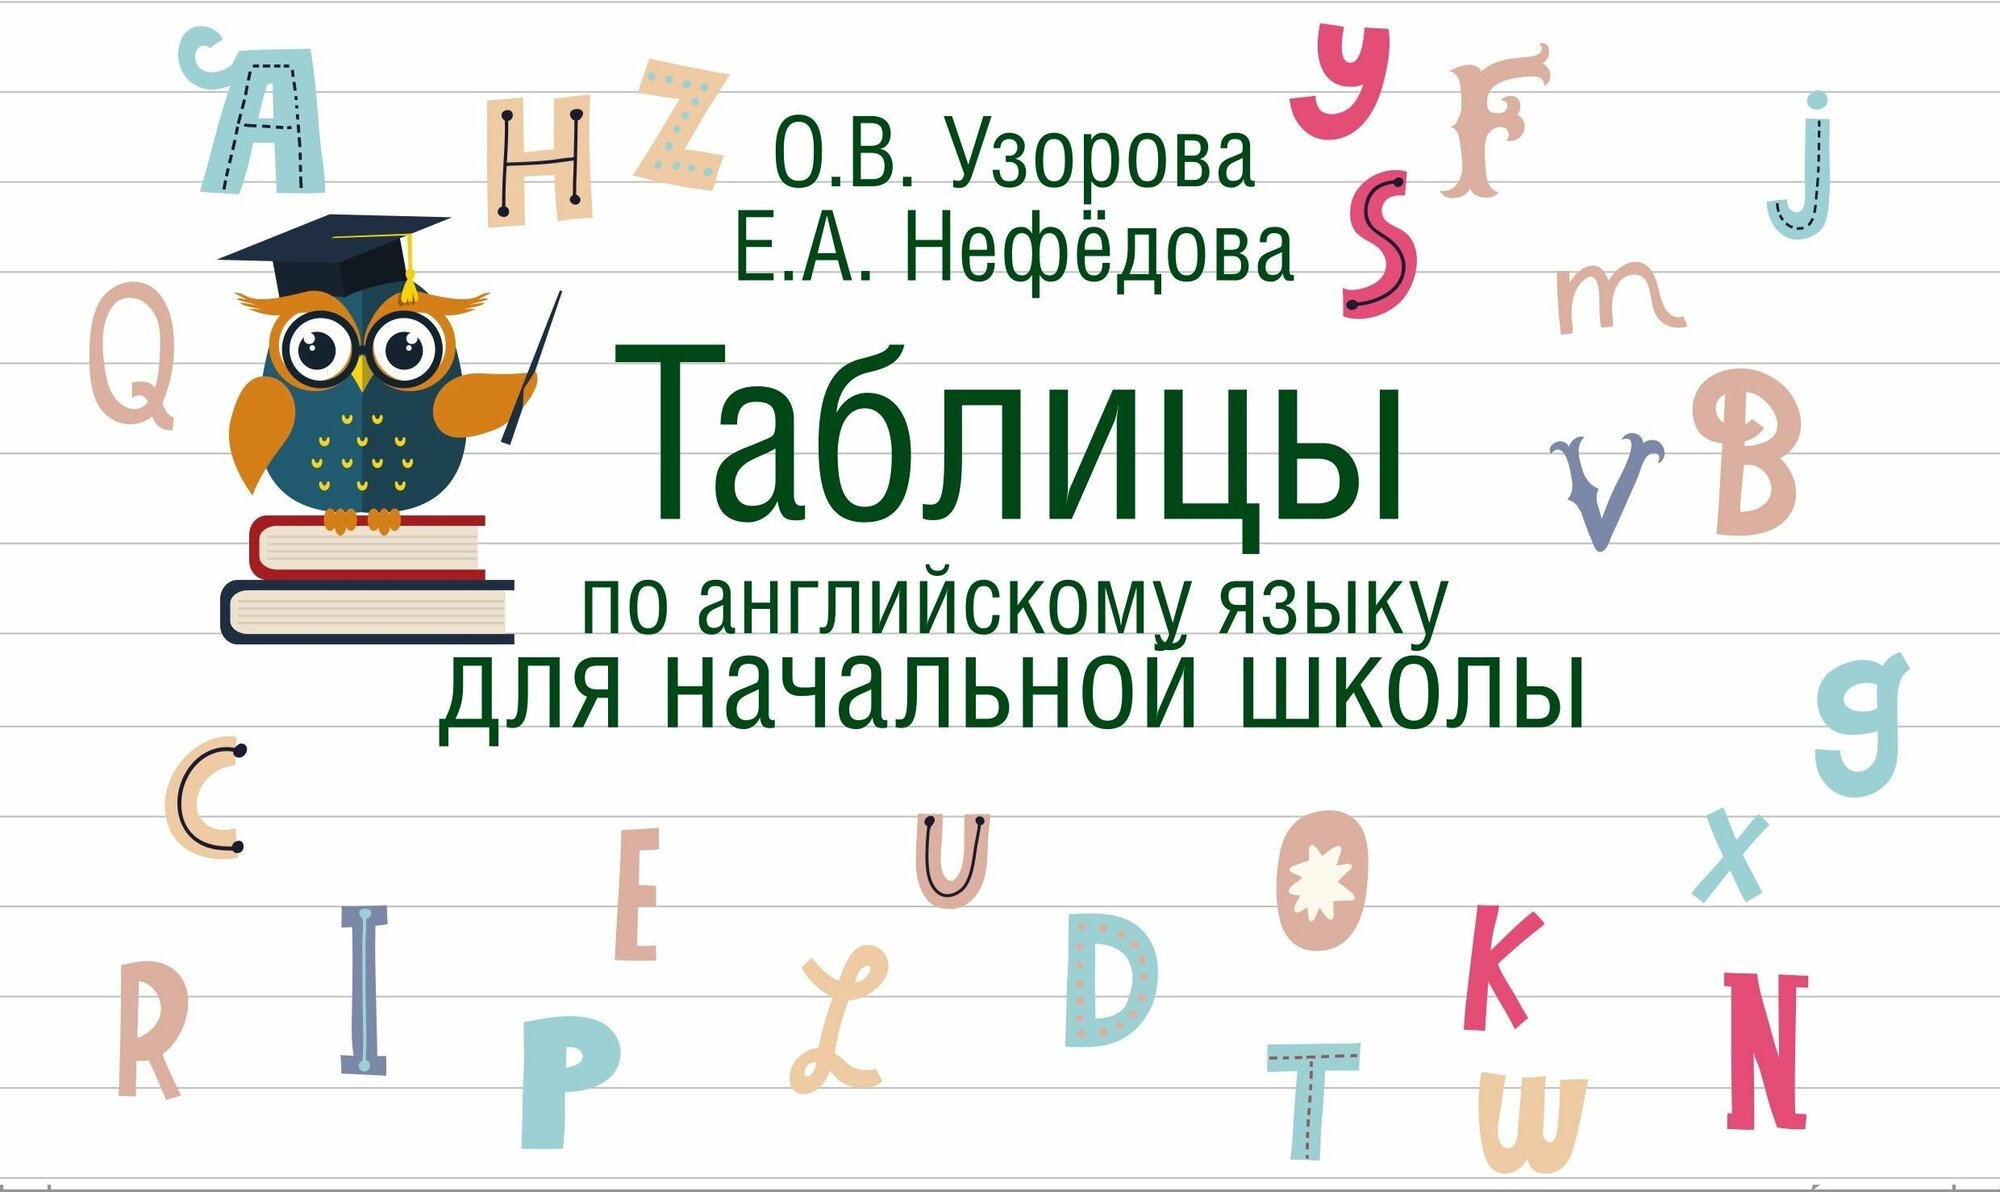 Узорова О.В. Нефедова Е.А. "Таблицы по английскому языку для начальной школы"